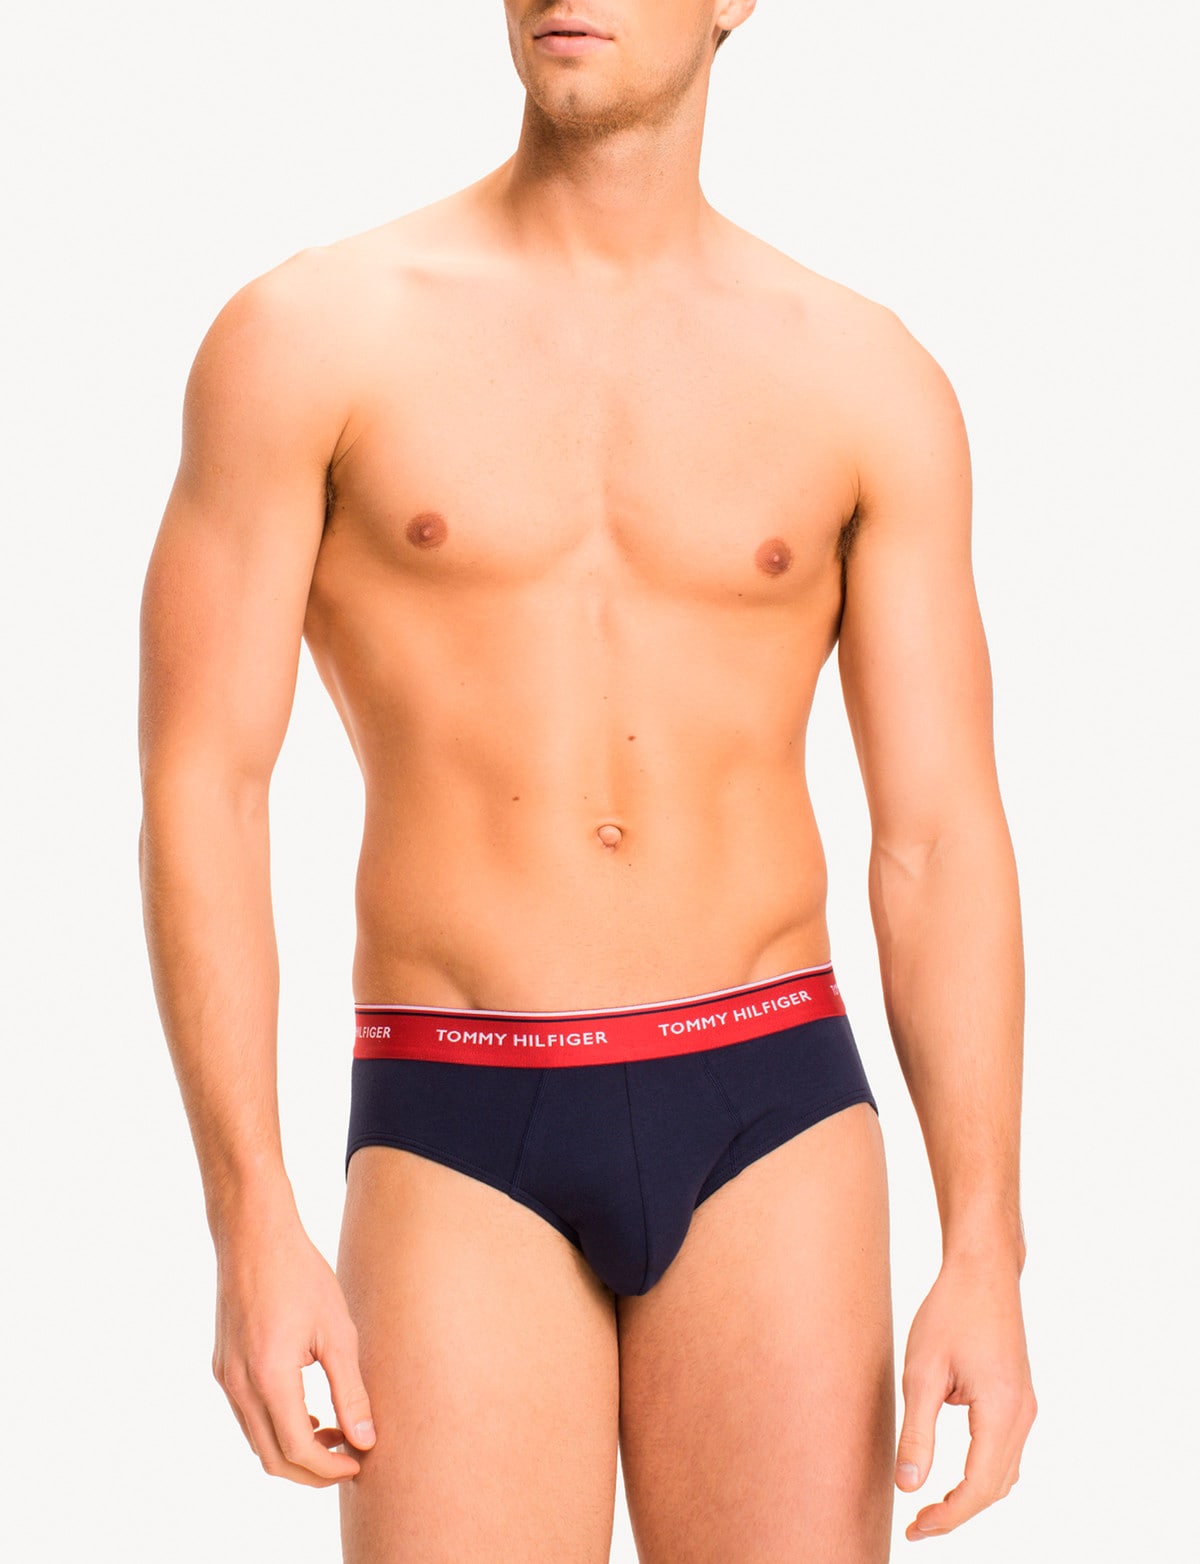 Men's underwear set 3PK navy Calvin Klein Underwear